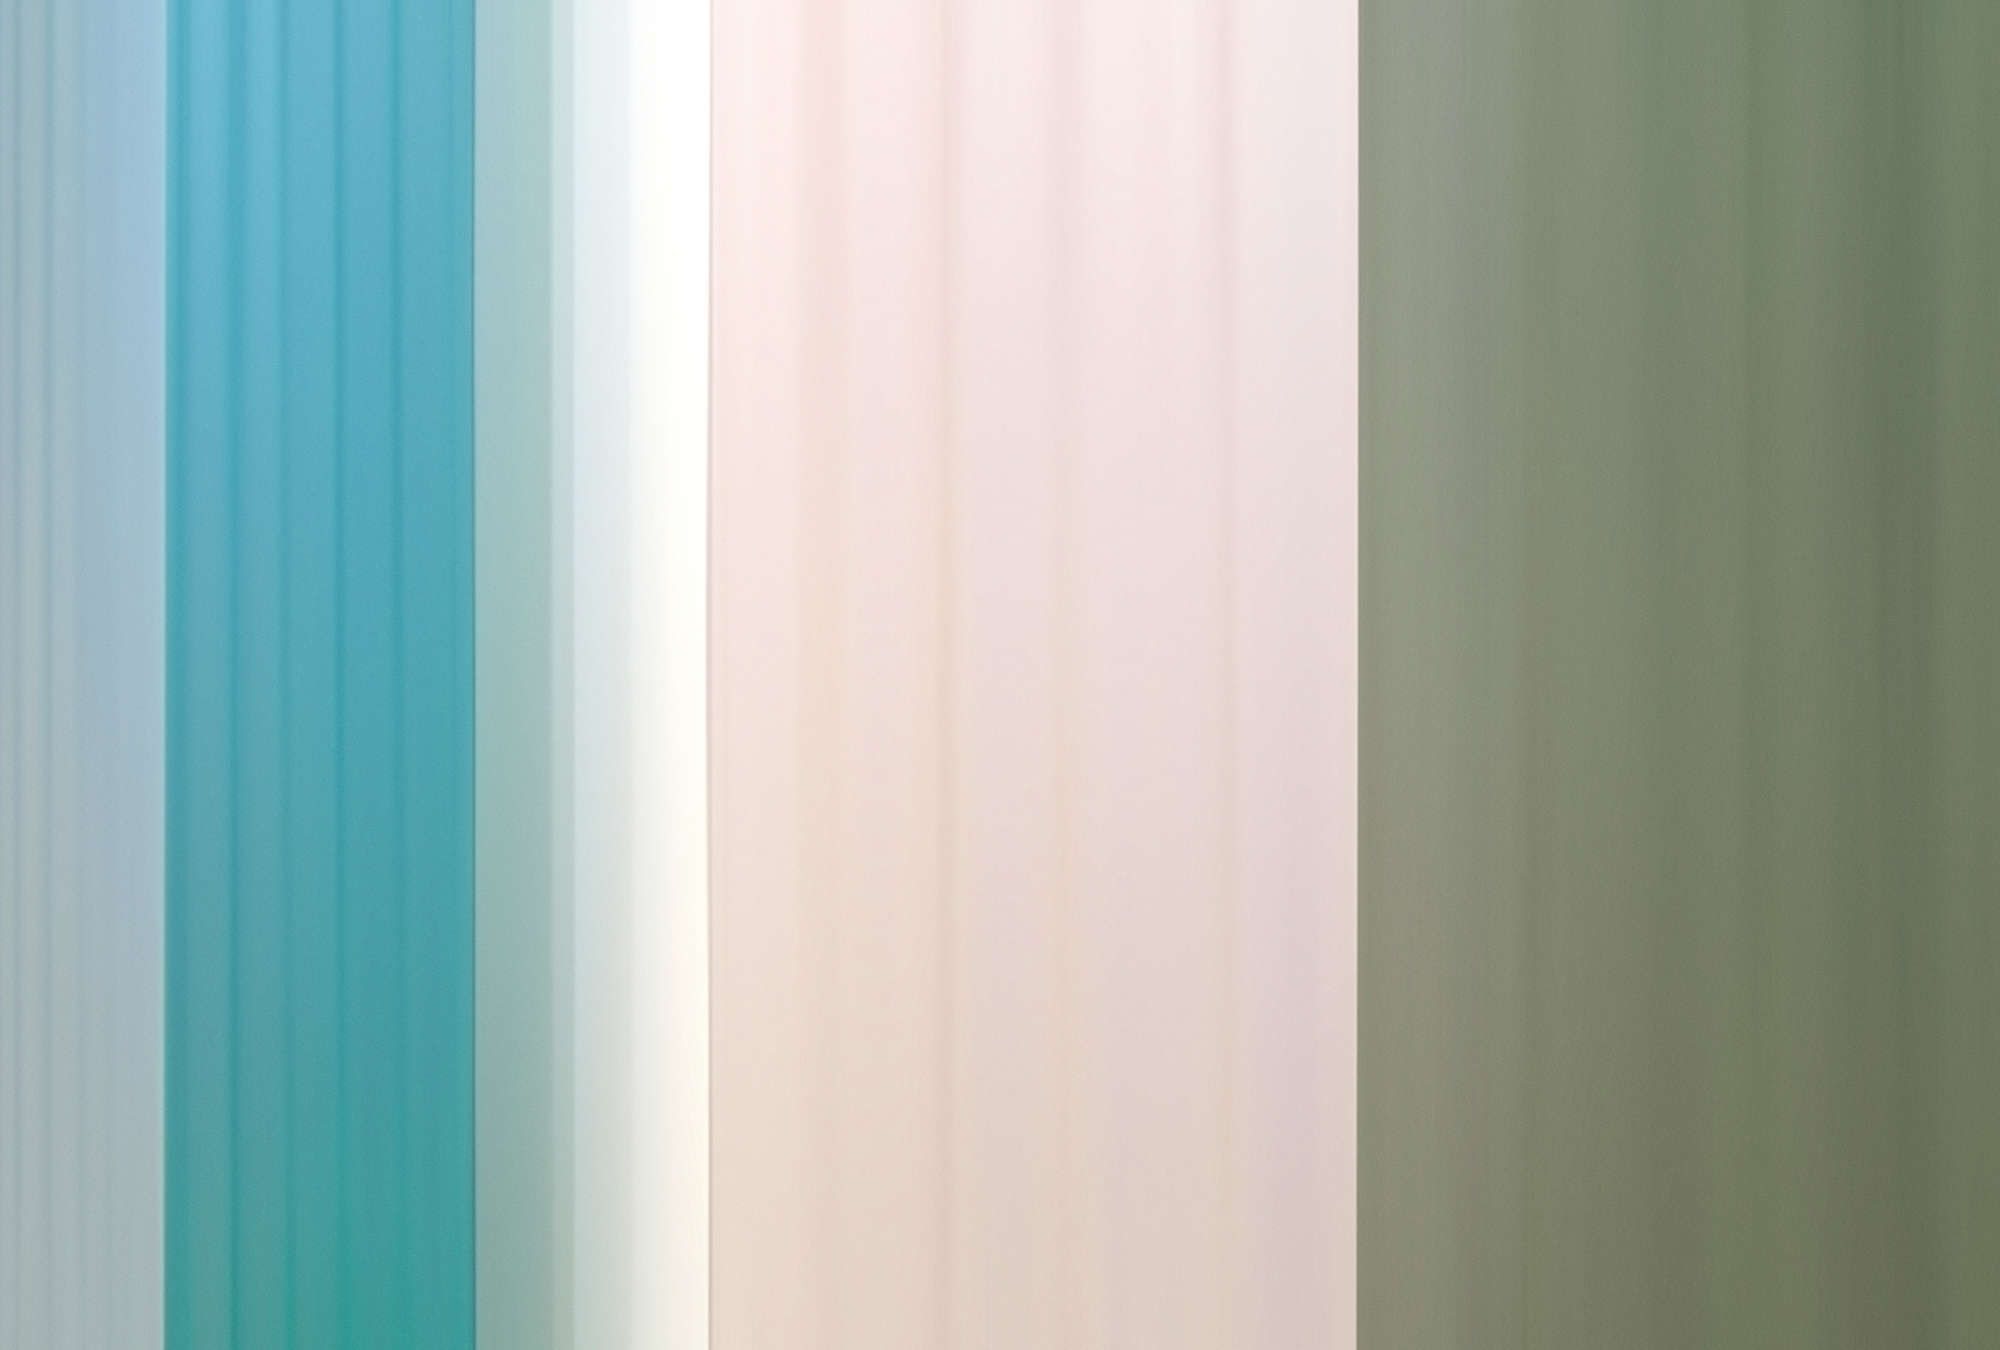             Fotomural »co-colores 4« - Degradado de colores con rayas - turquesa, crema, verde | Material sin tejer ligeramente texturado
        